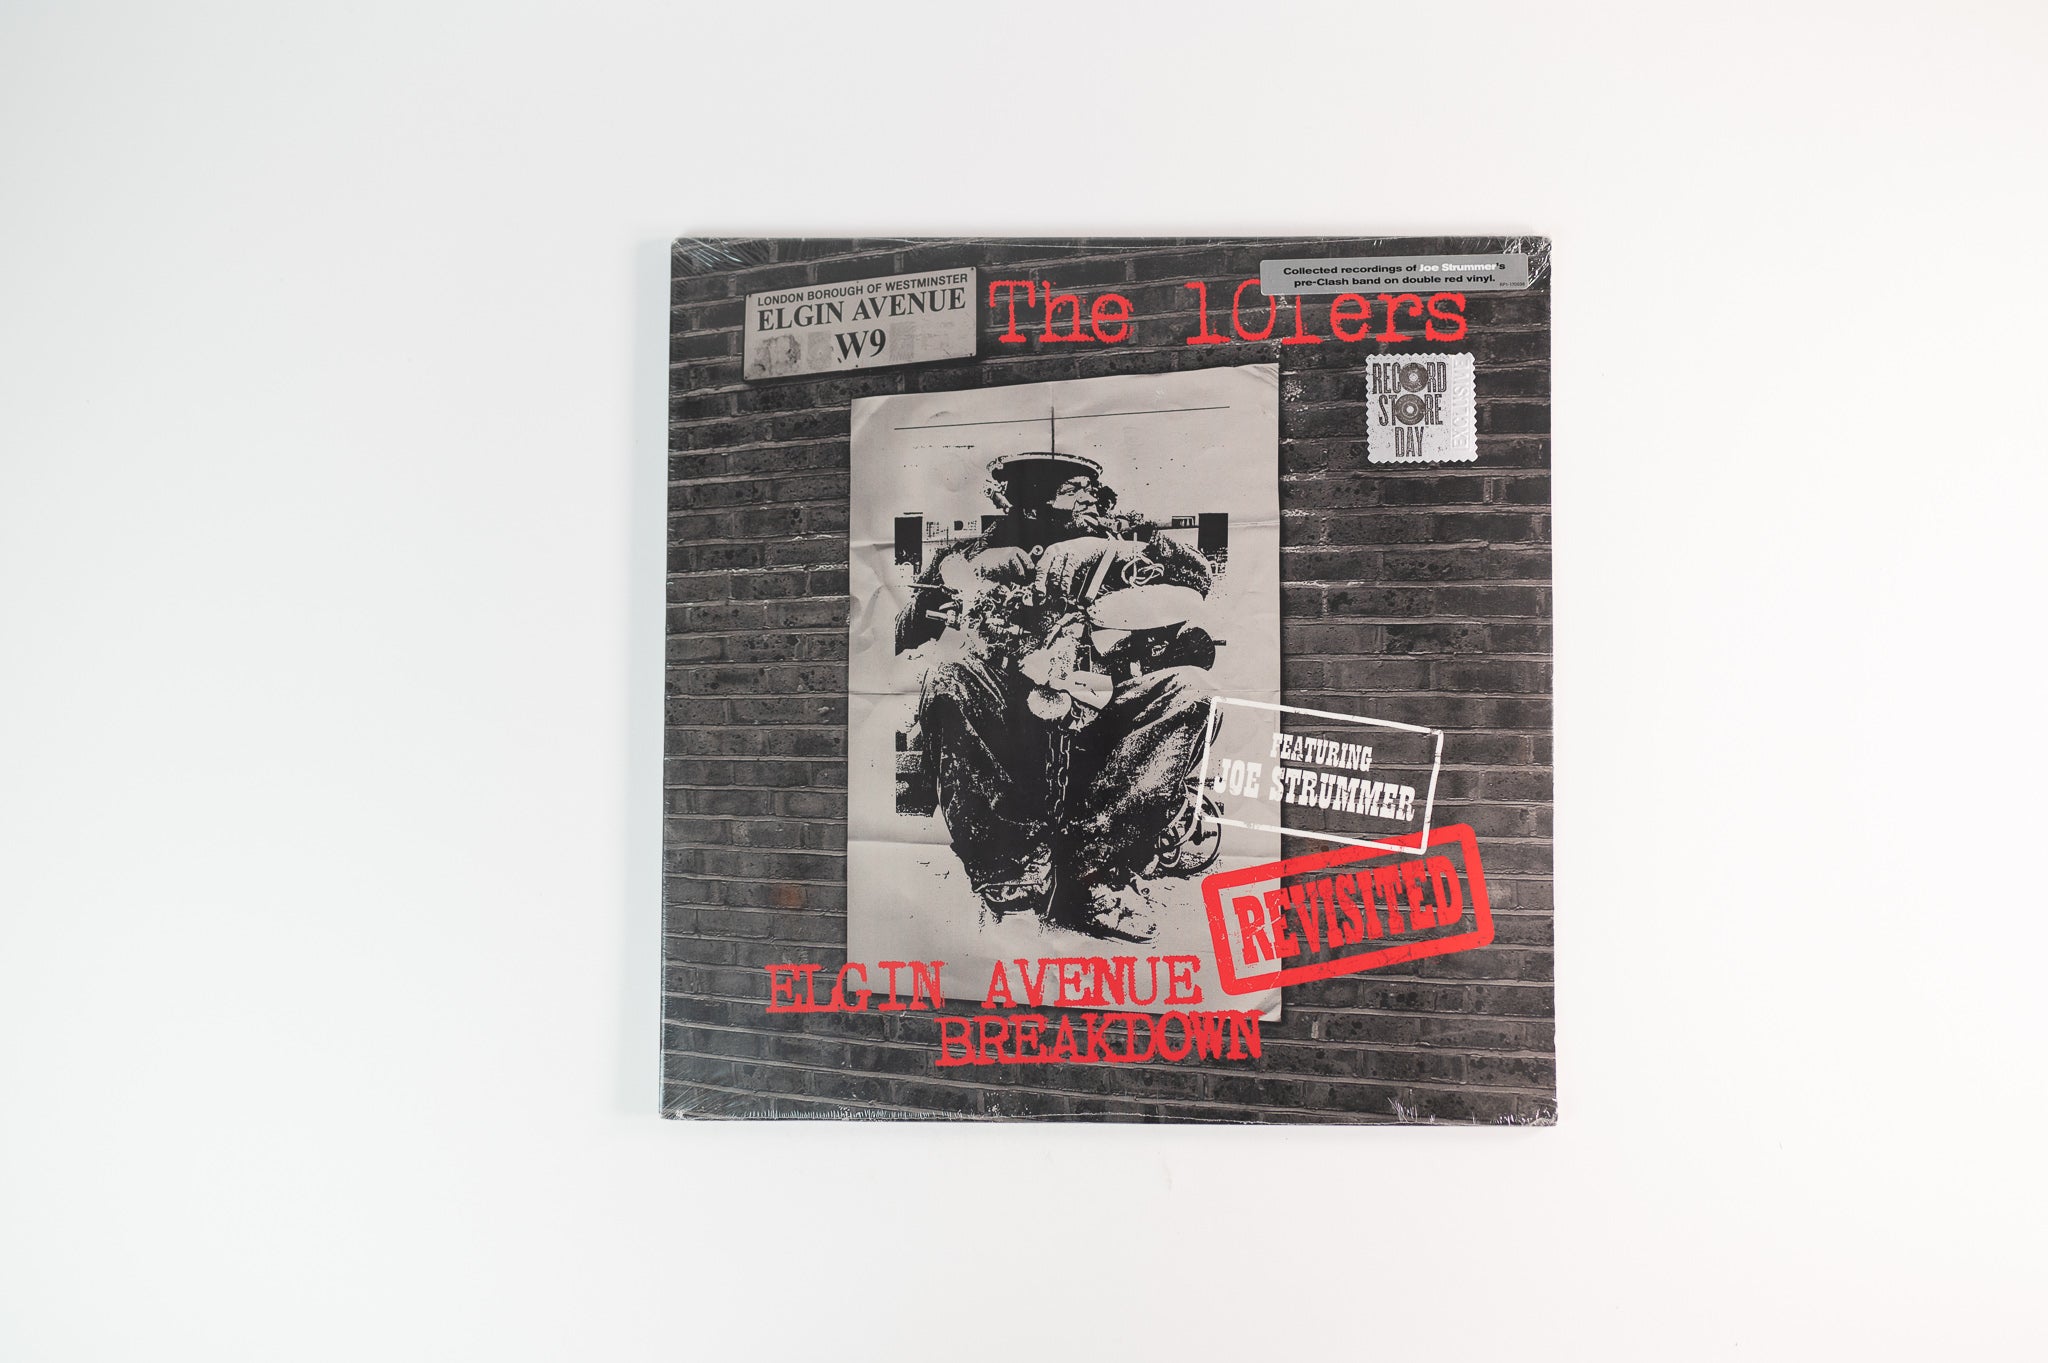 The 101'ers - Elgin Avenue Breakdown Revisited on Adalucia Ltd Red Vinyl RSD 2015 Sealed